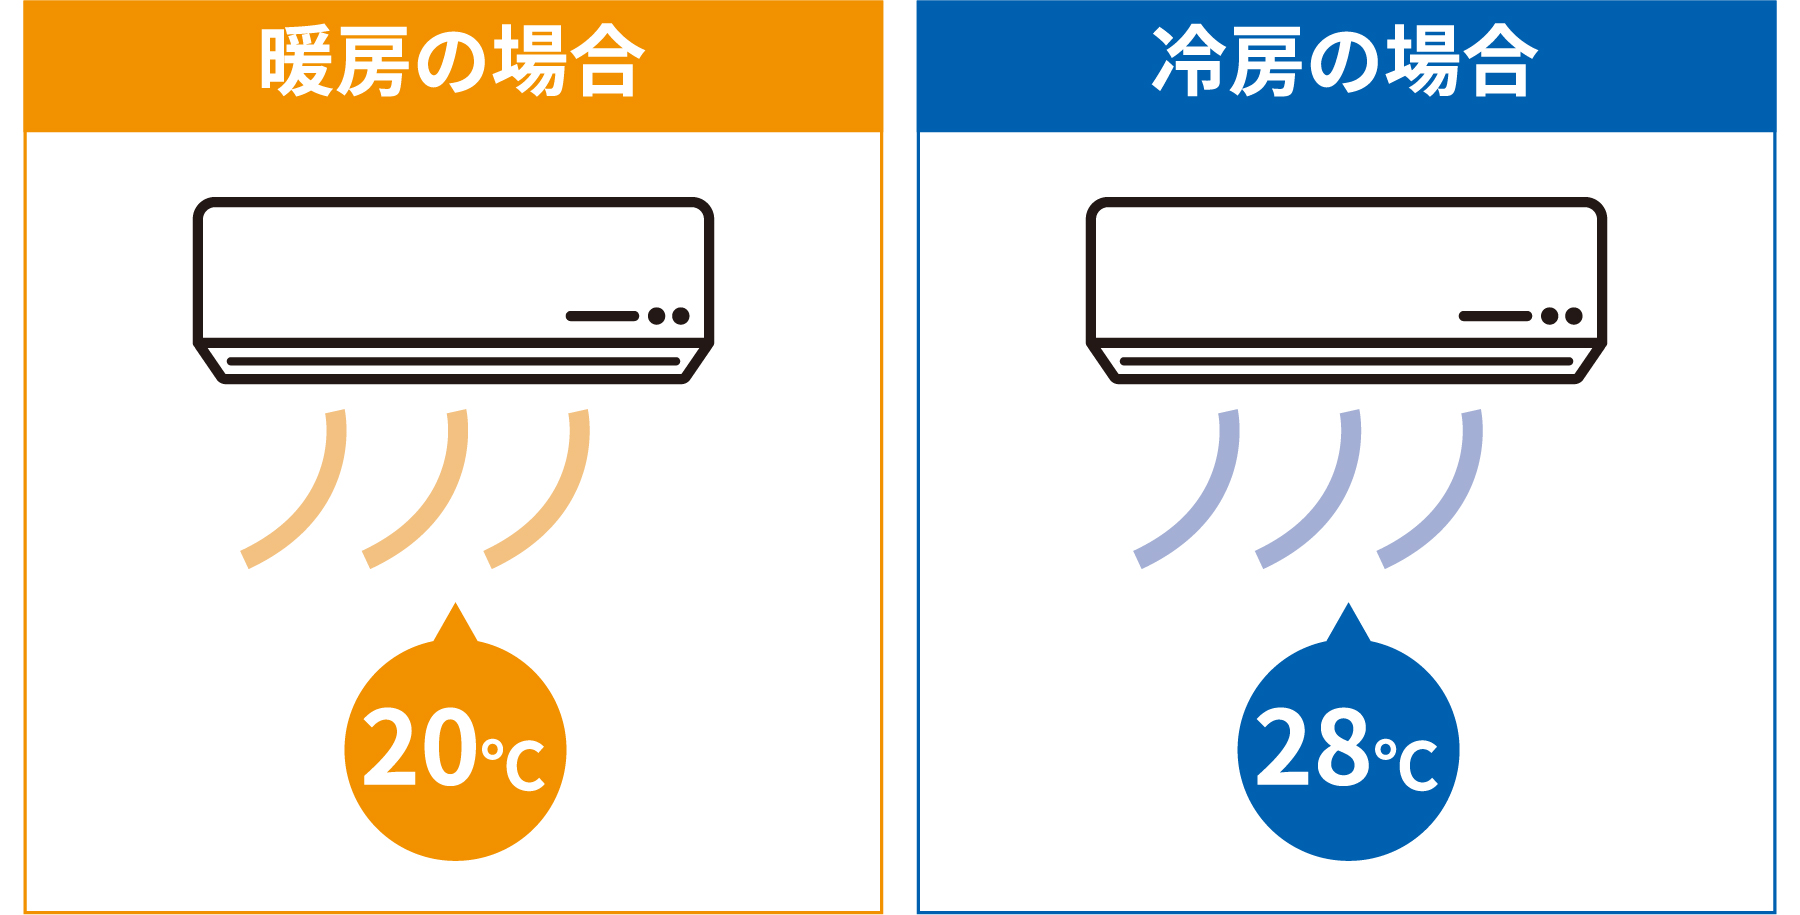 エアコンの適切な設定温度 暖房の場合：20℃、冷房の場合：28℃